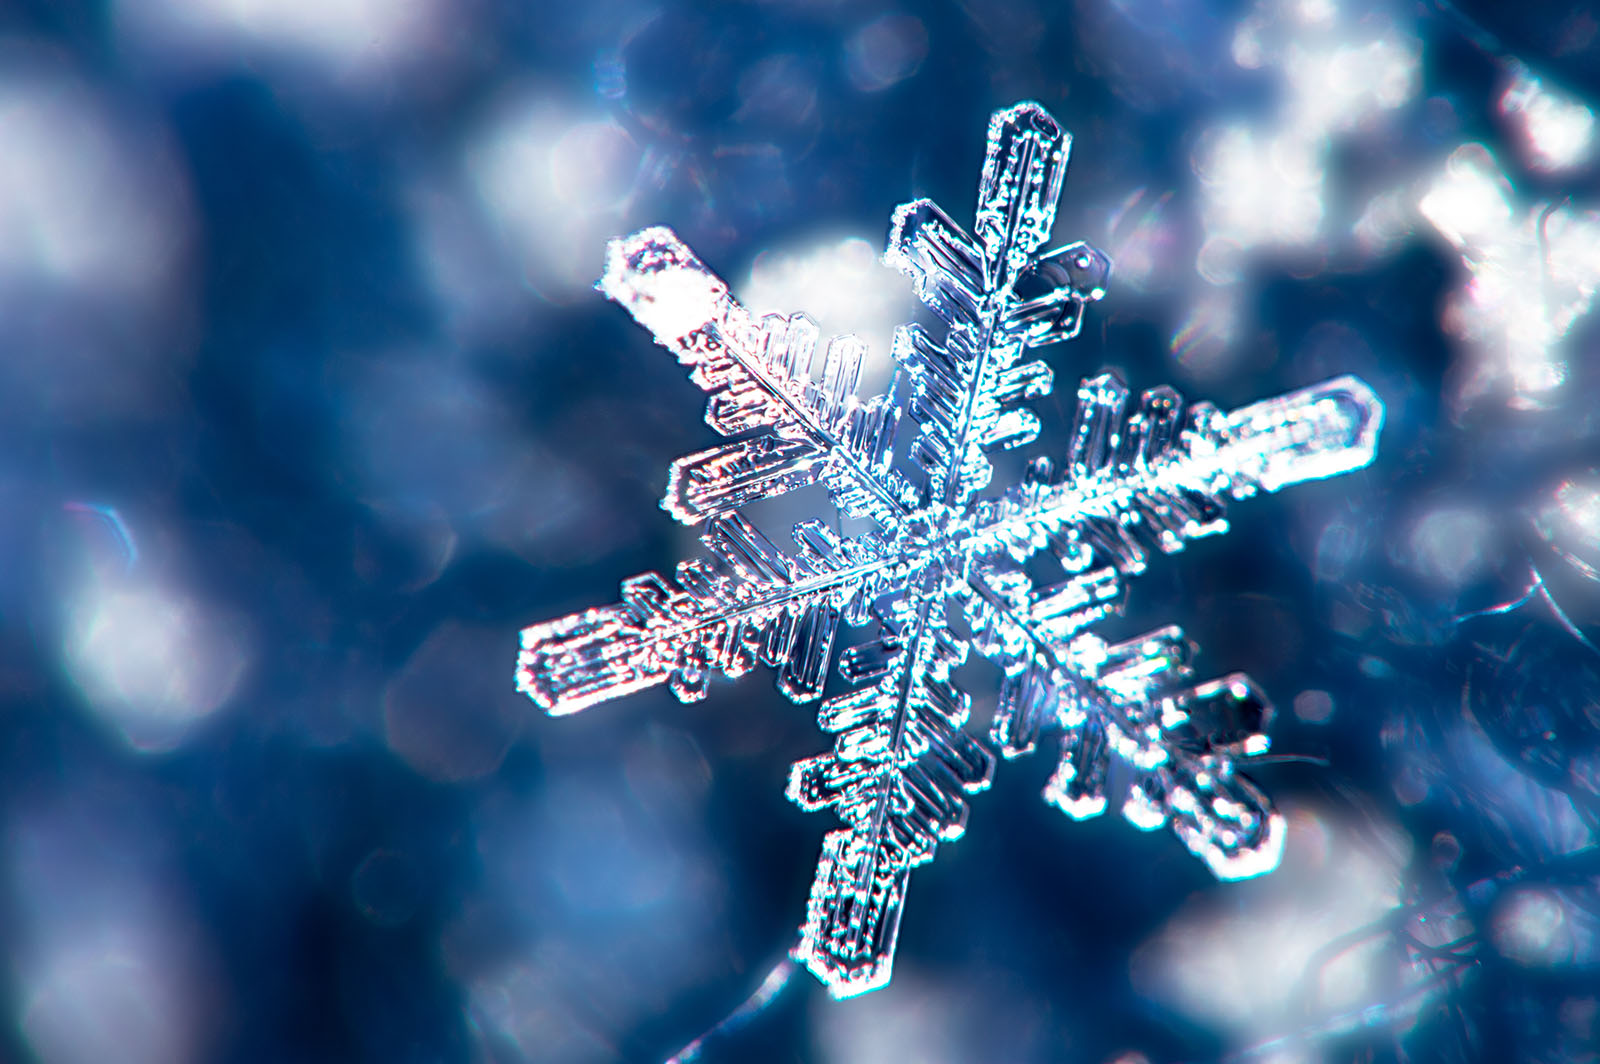 Close up shot of a single snowflake